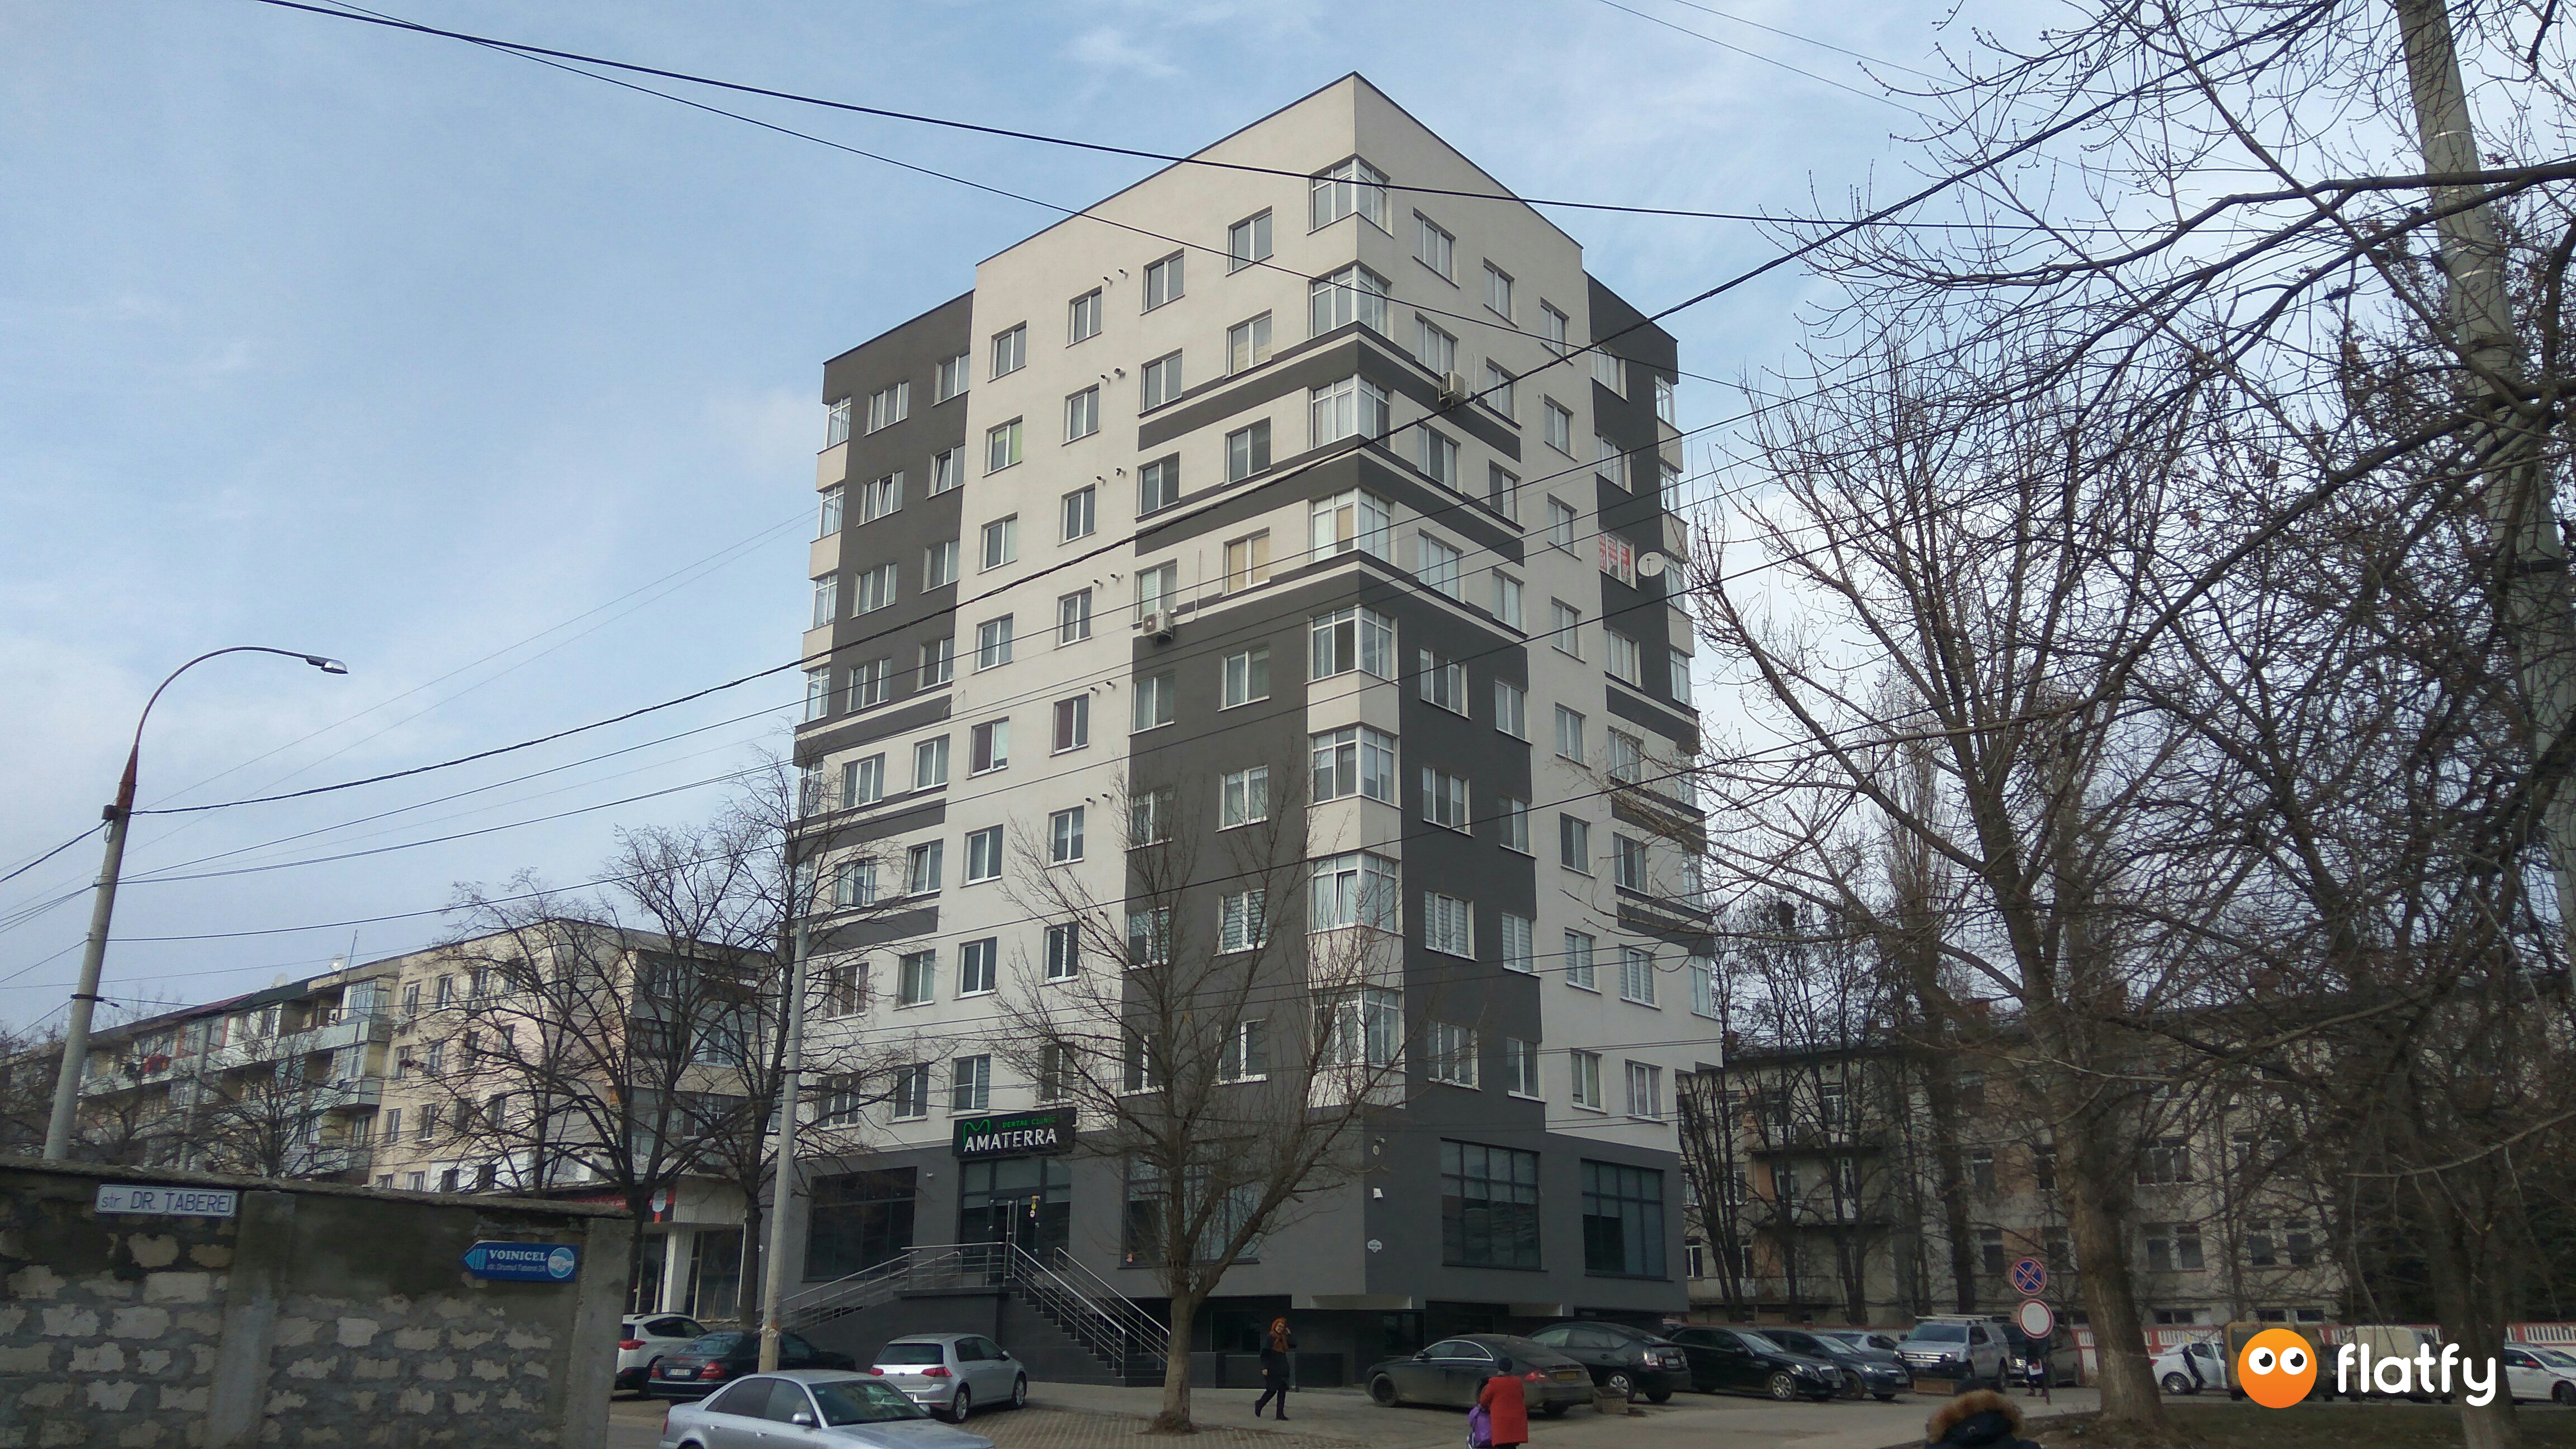 Evoluția construcției Complexului Bloc Locativ Vasile Lupu 34/2 - Punct 3, Februarie 2019